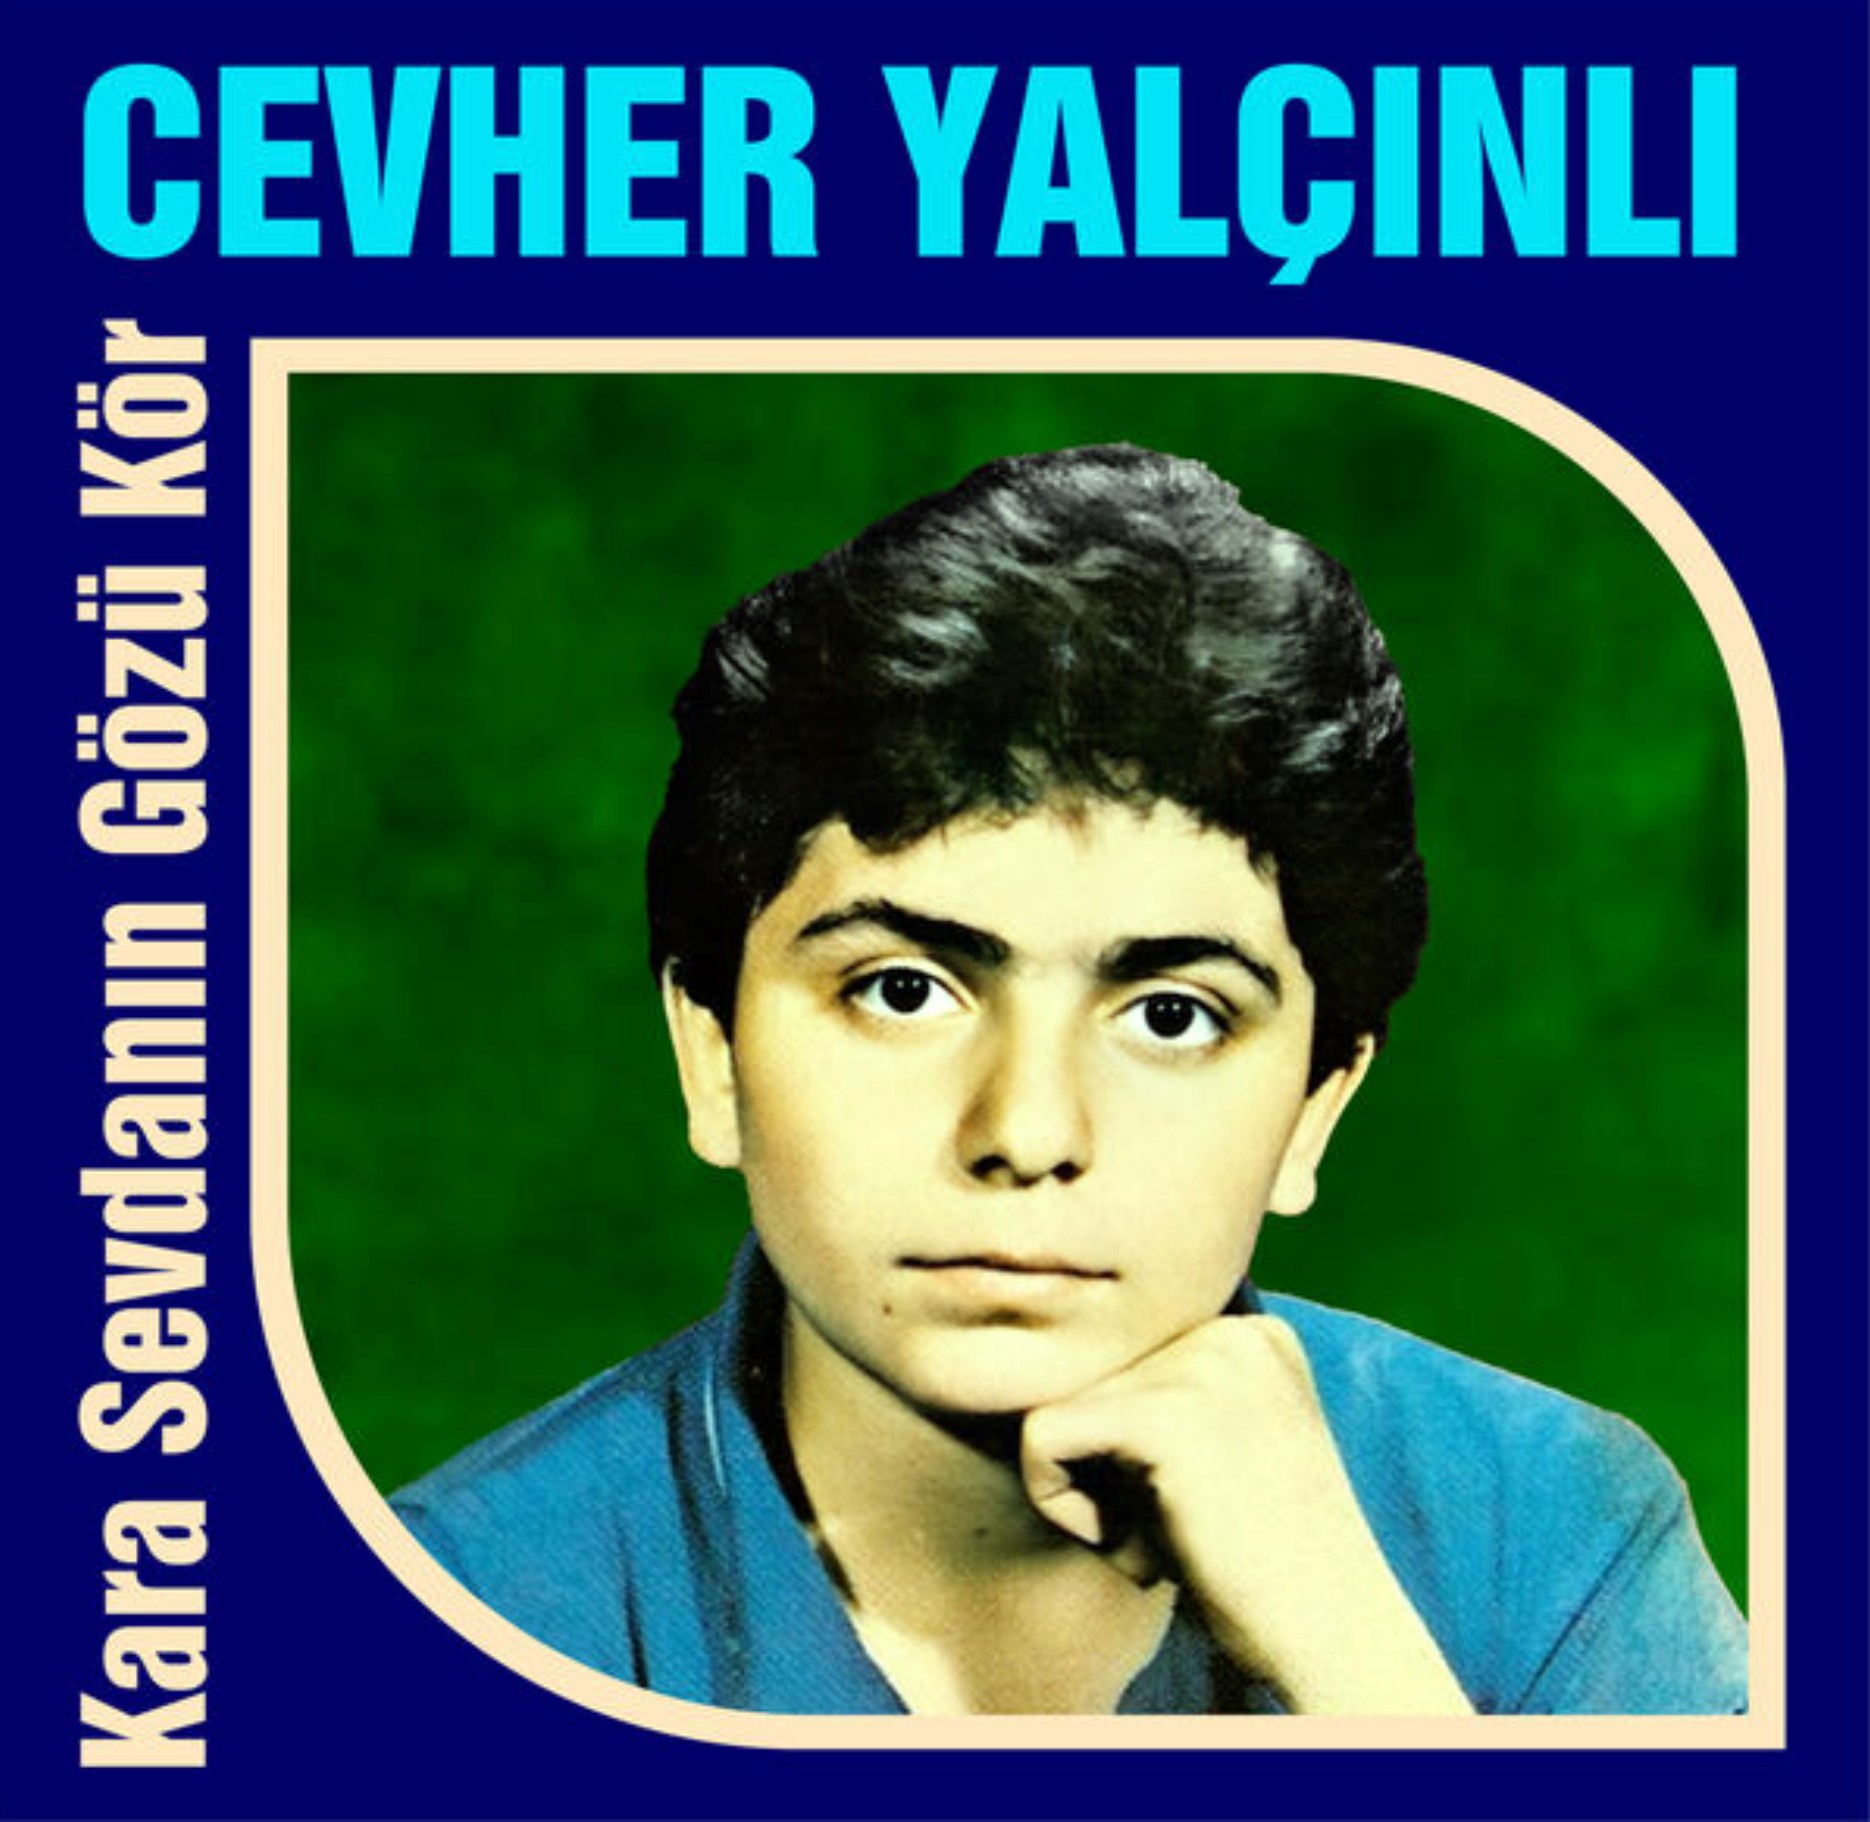 Cevher Yalcinli - Kara Sevdanin Gözü Kör (Yalcin Plak) (1979) 1